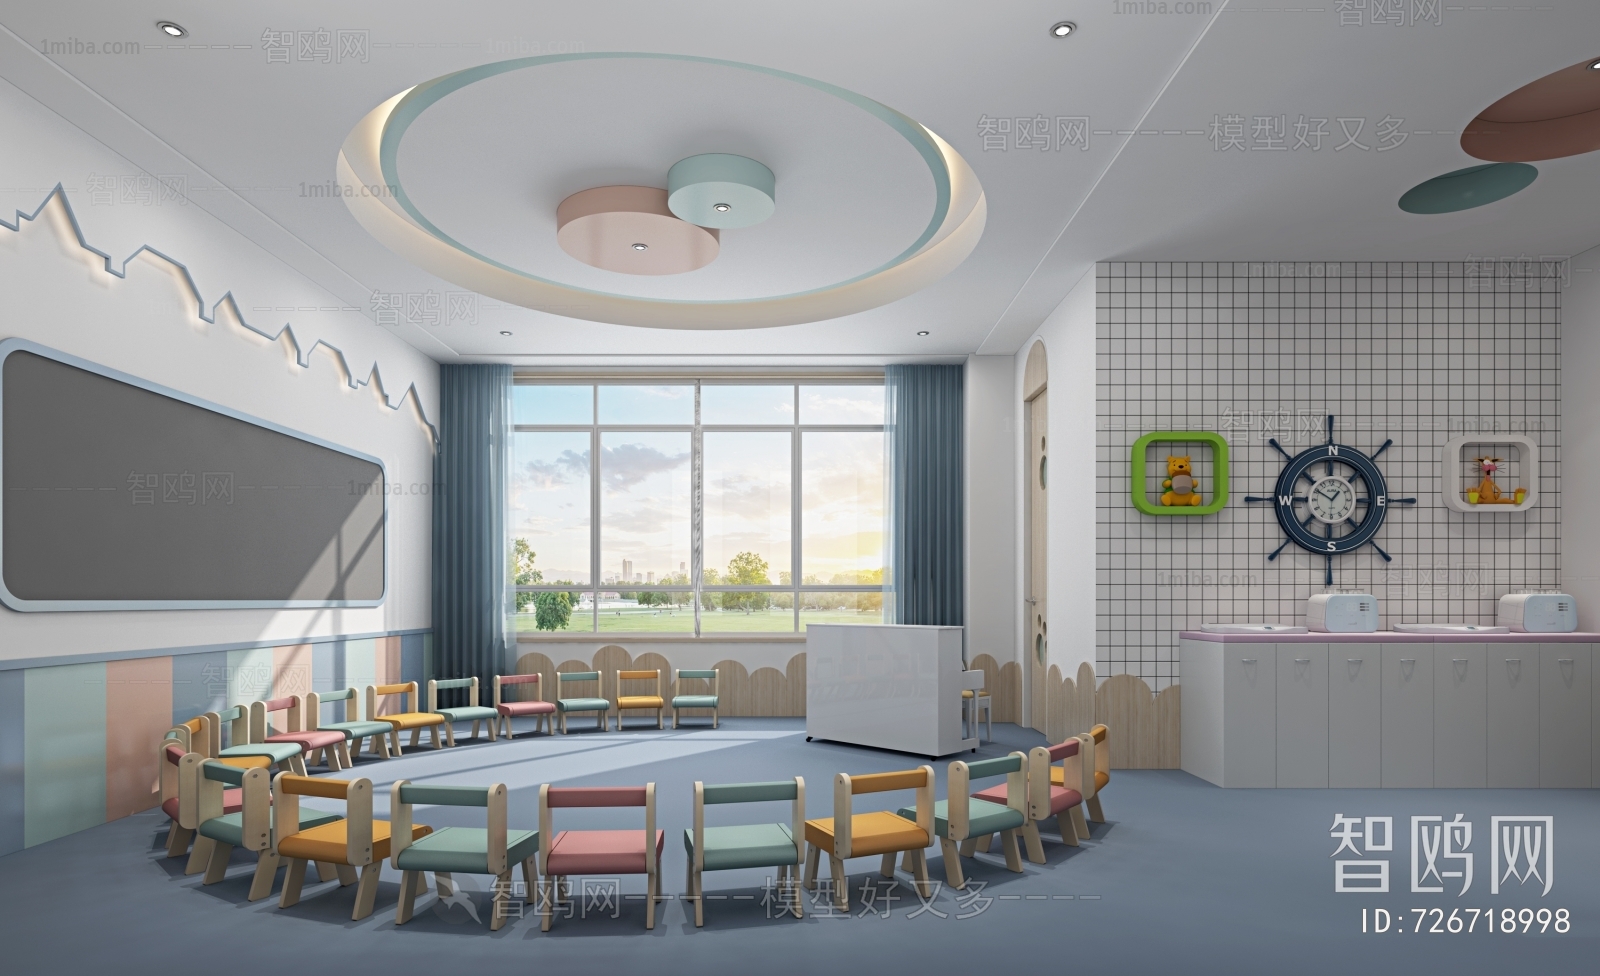 多场景-现代儿童幼儿园活动区+前台+走廊+卫生间